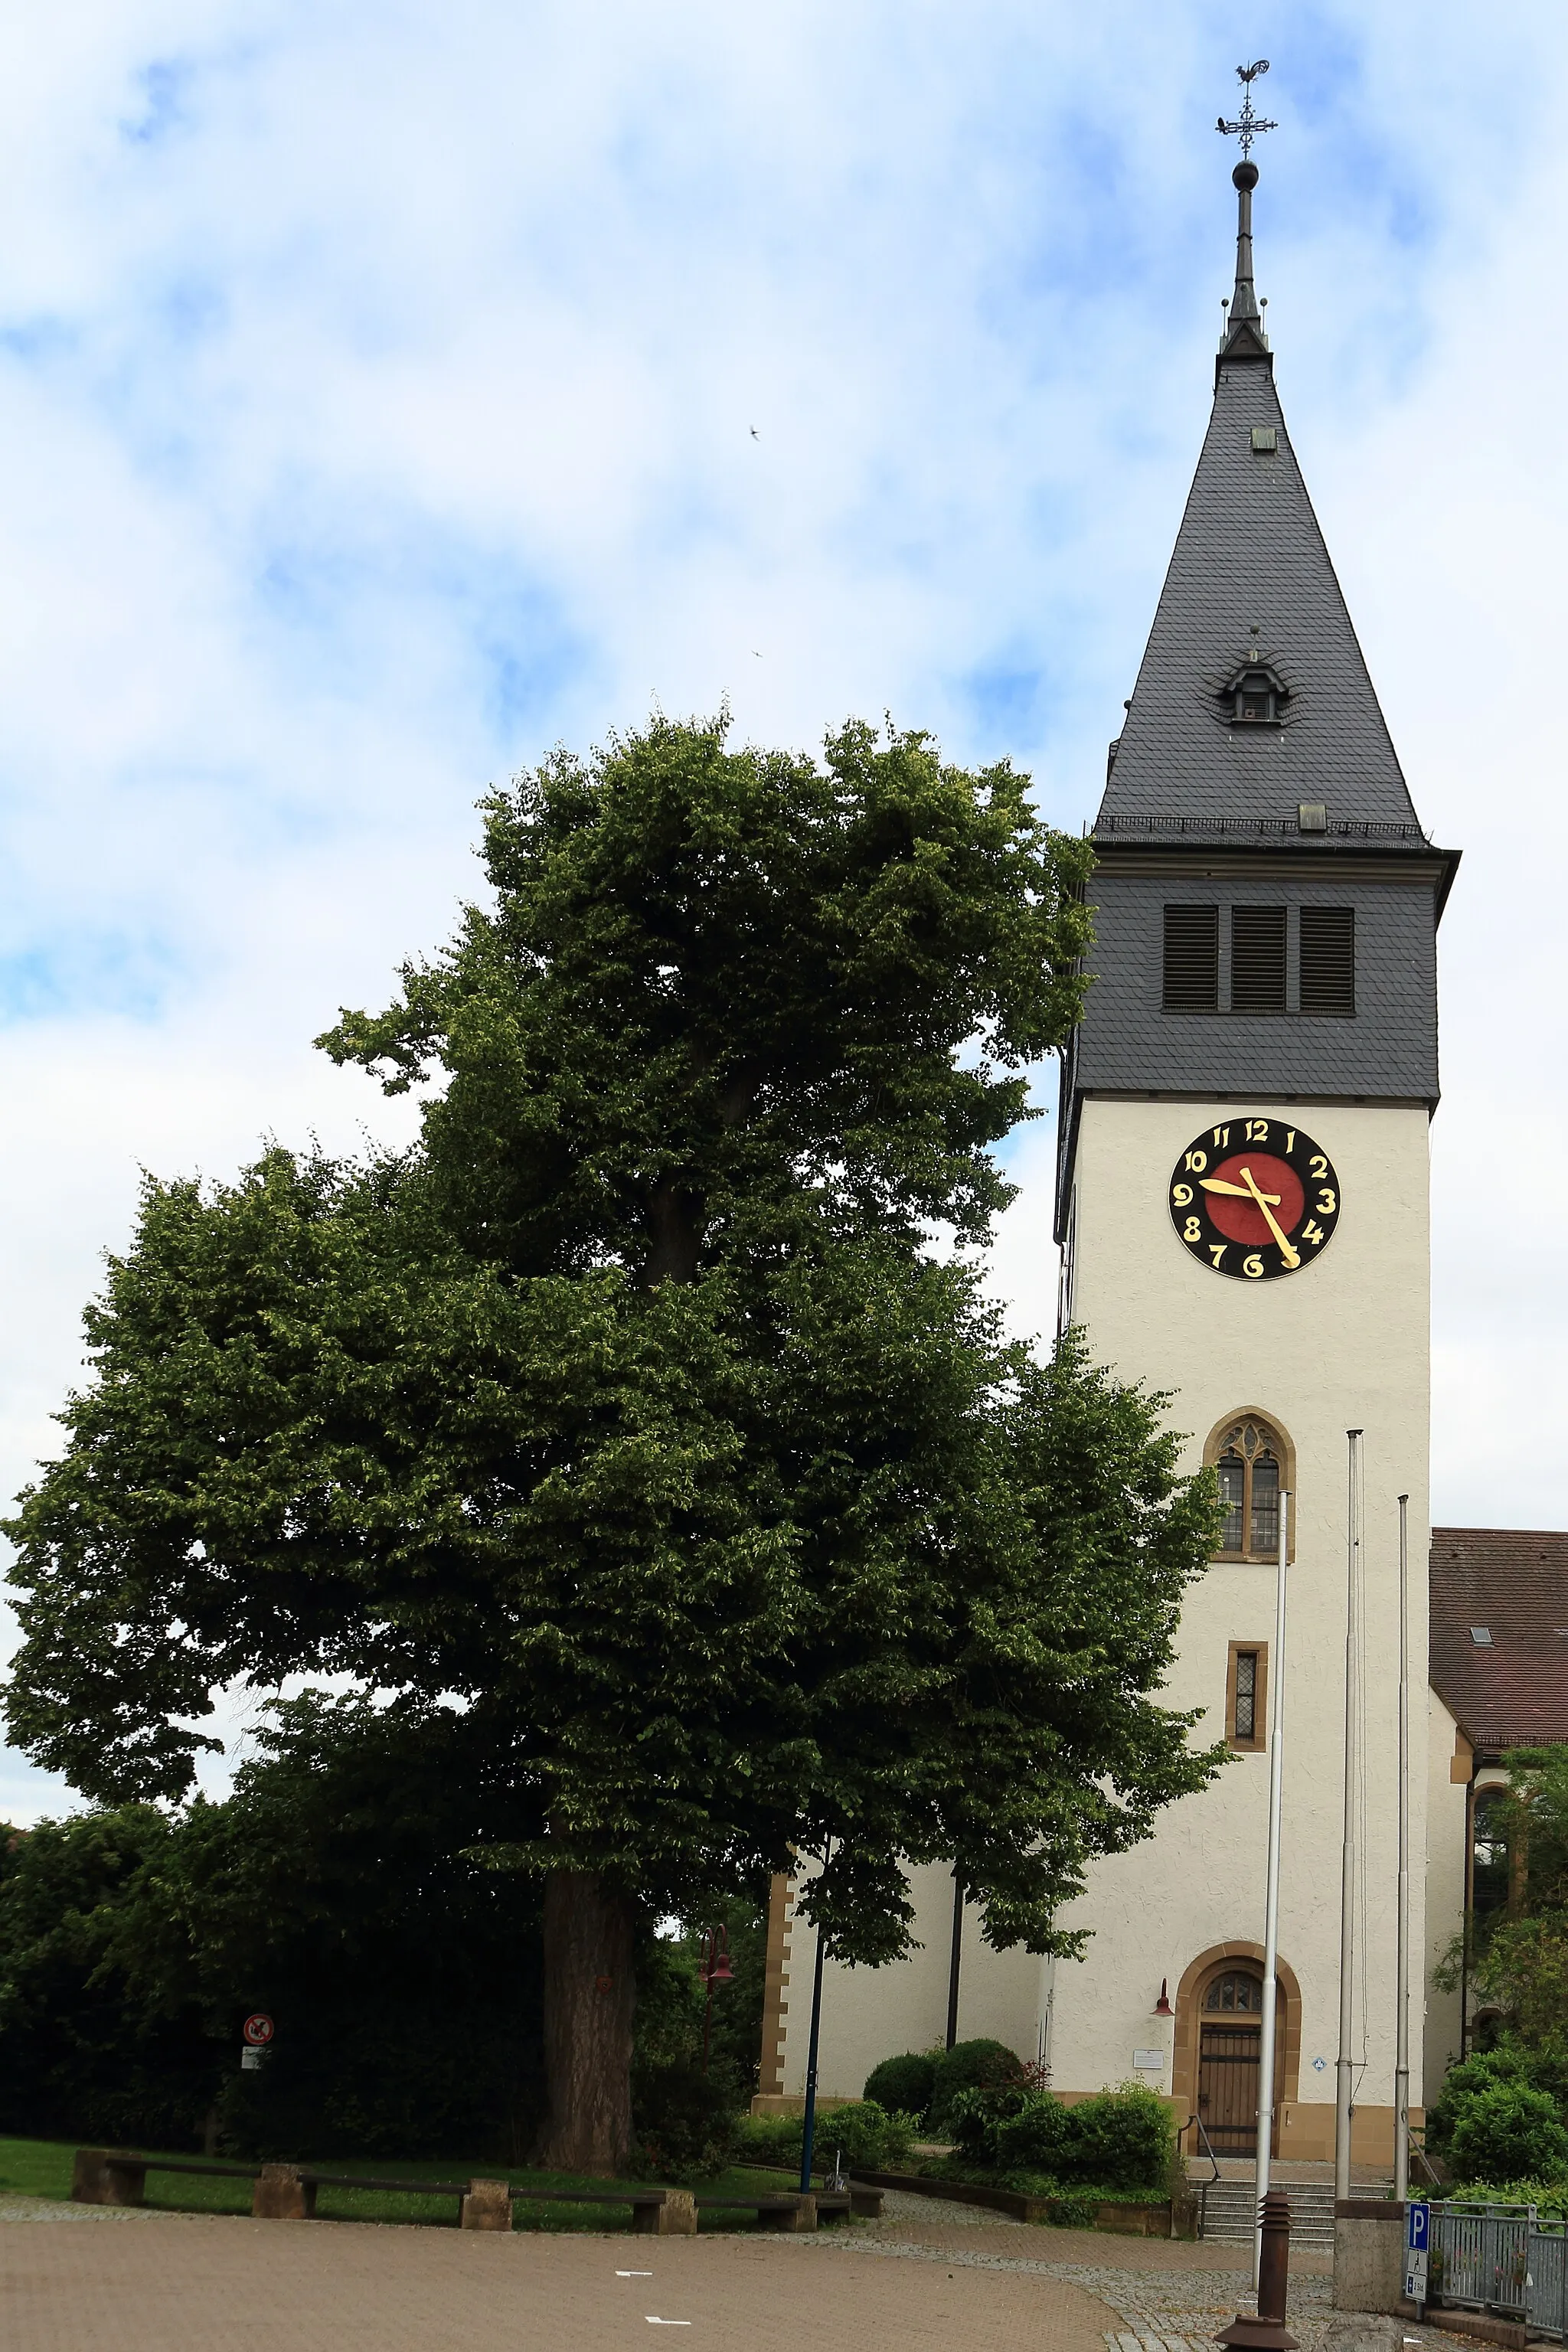 Photo showing: END (Einzelstehendes Naturdenkmal) "Linde" mit der Kennung 81250980001 zwischen der Johanneskirche und dem Rathaus Untergruppenbach, daneben im Bild der Kirchturm